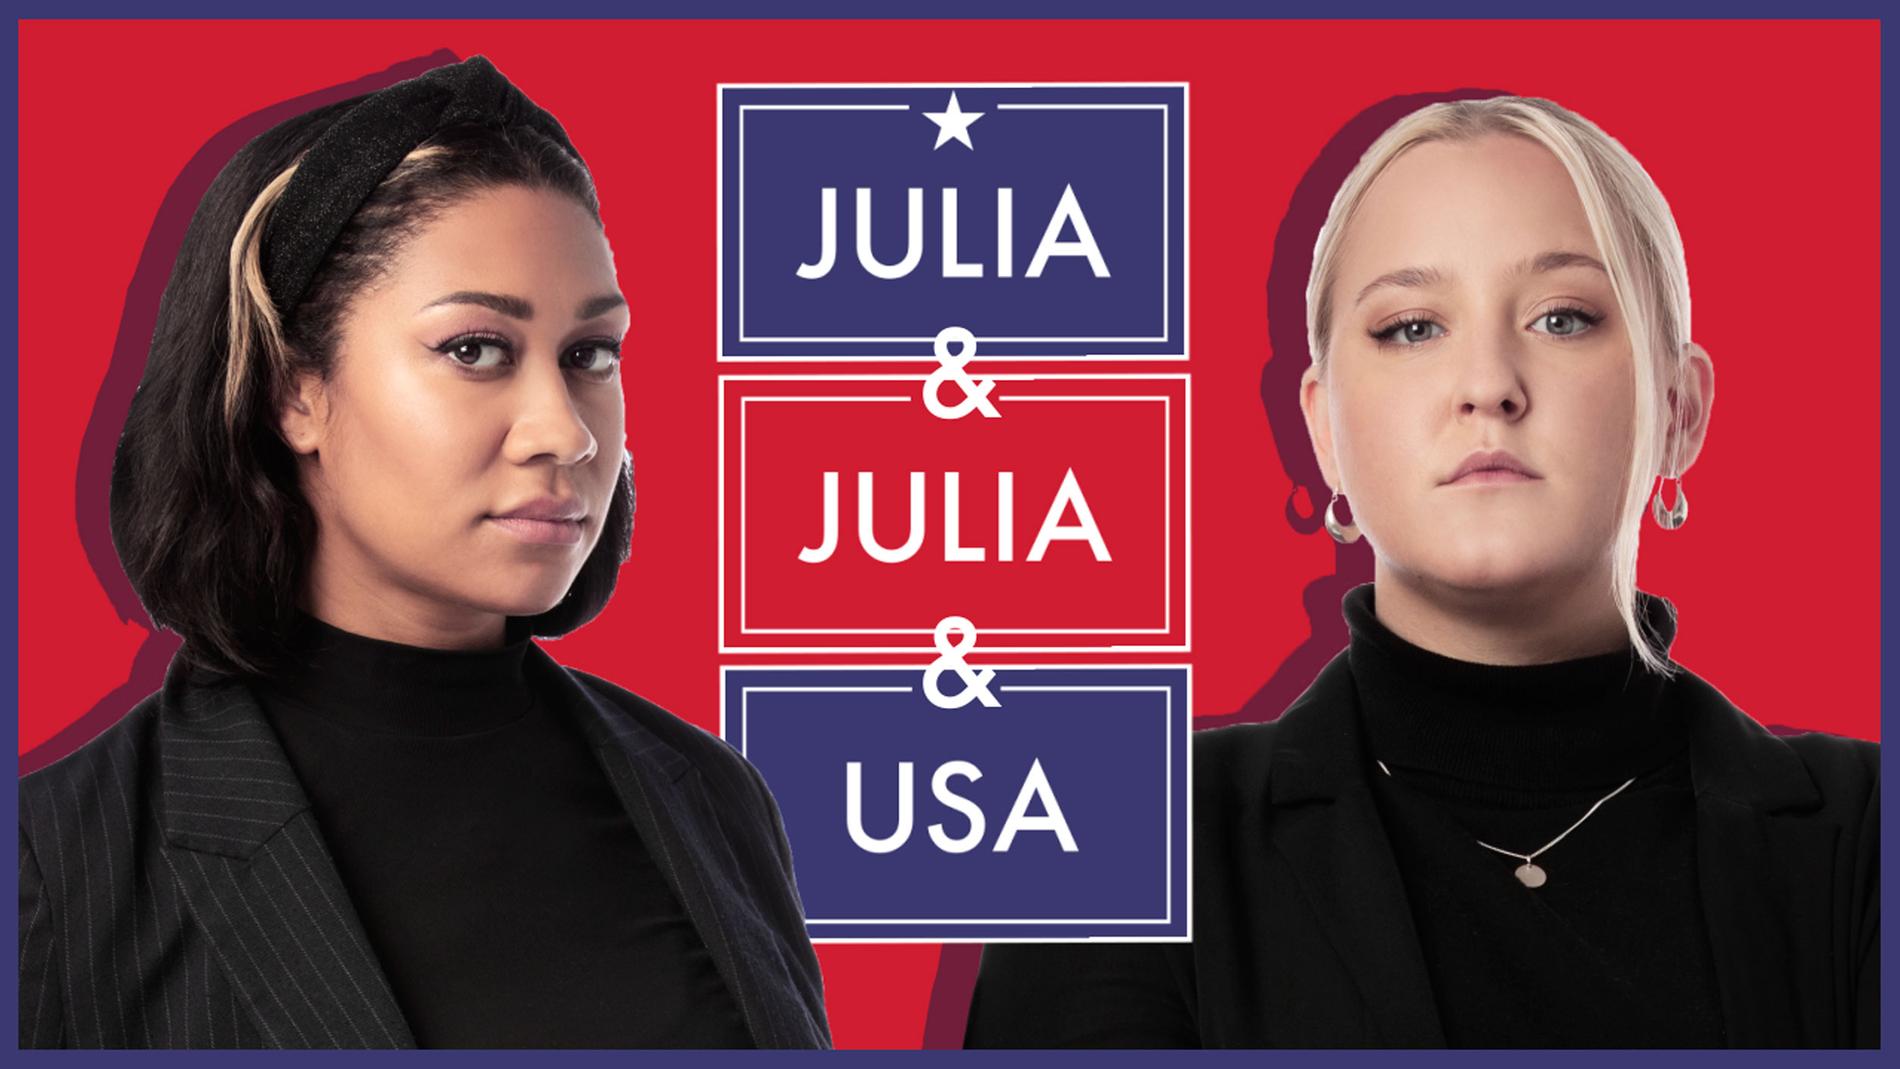 Julia Frändfors och Julia Lyskova från programmet ”Julia & Julia & USA”.